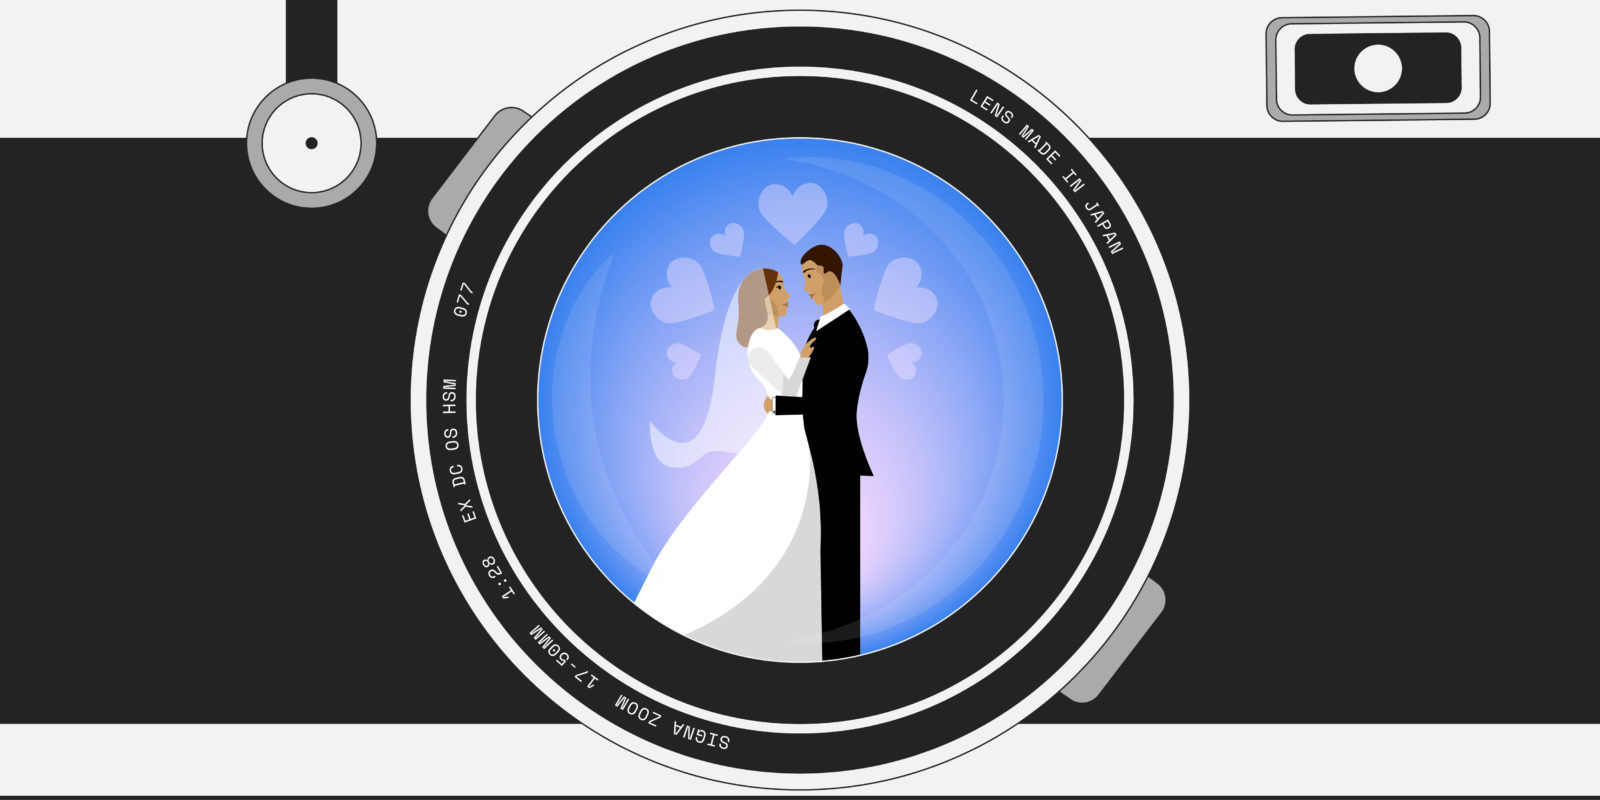 En moyenne, les Français prévoient 11 % du budget total de leur mariage pour le photographe